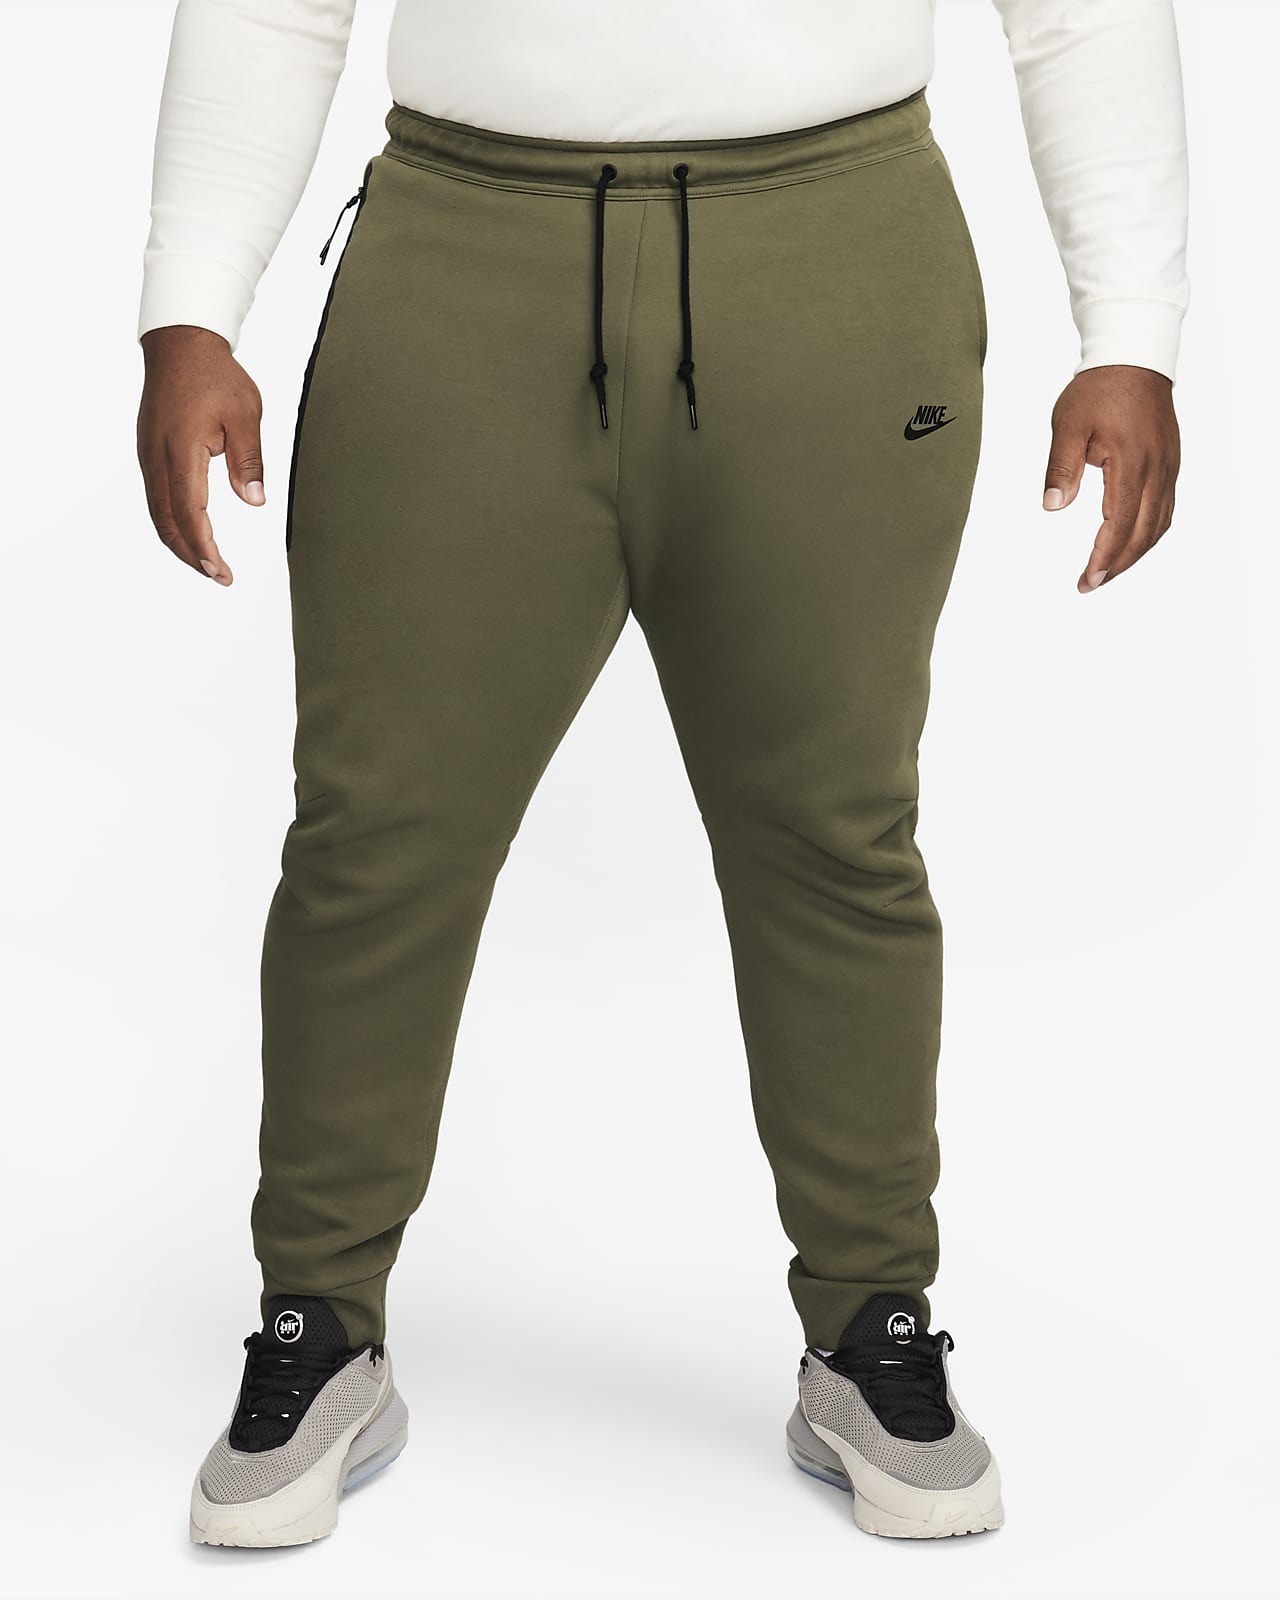 Joggings et Pantalons de Survêtement pour Homme. Nike FR